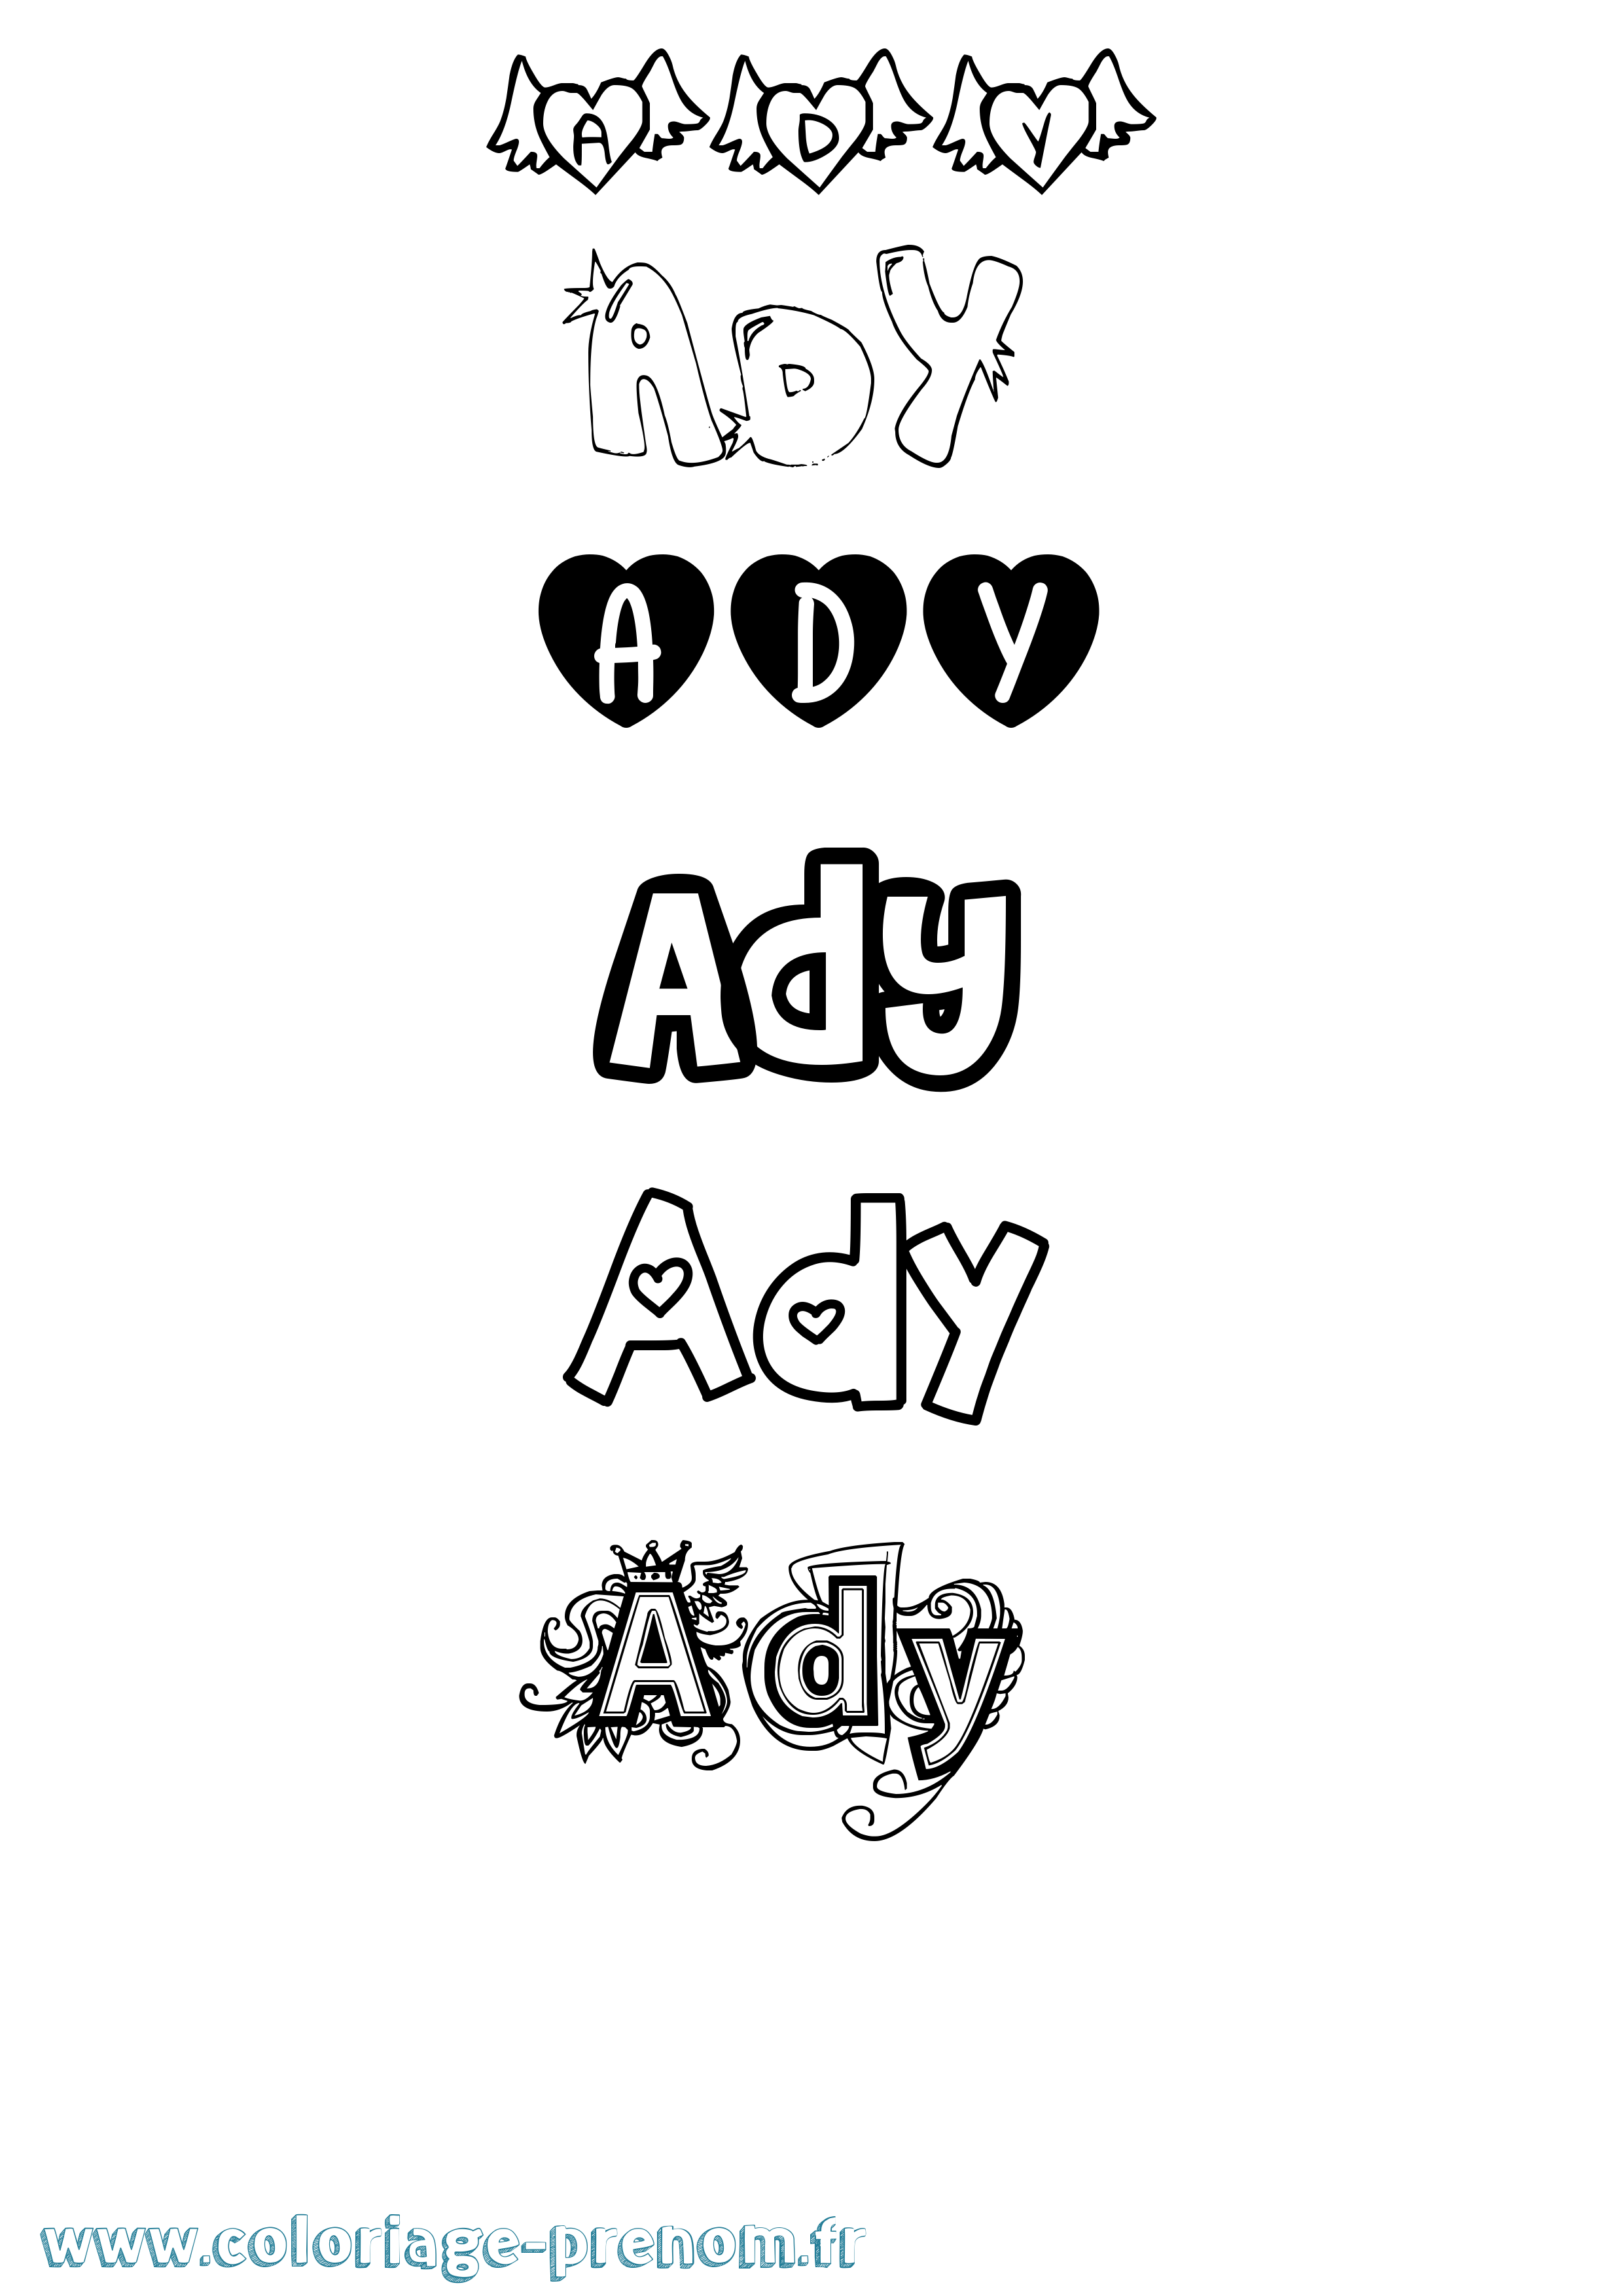 Coloriage prénom Ady Girly